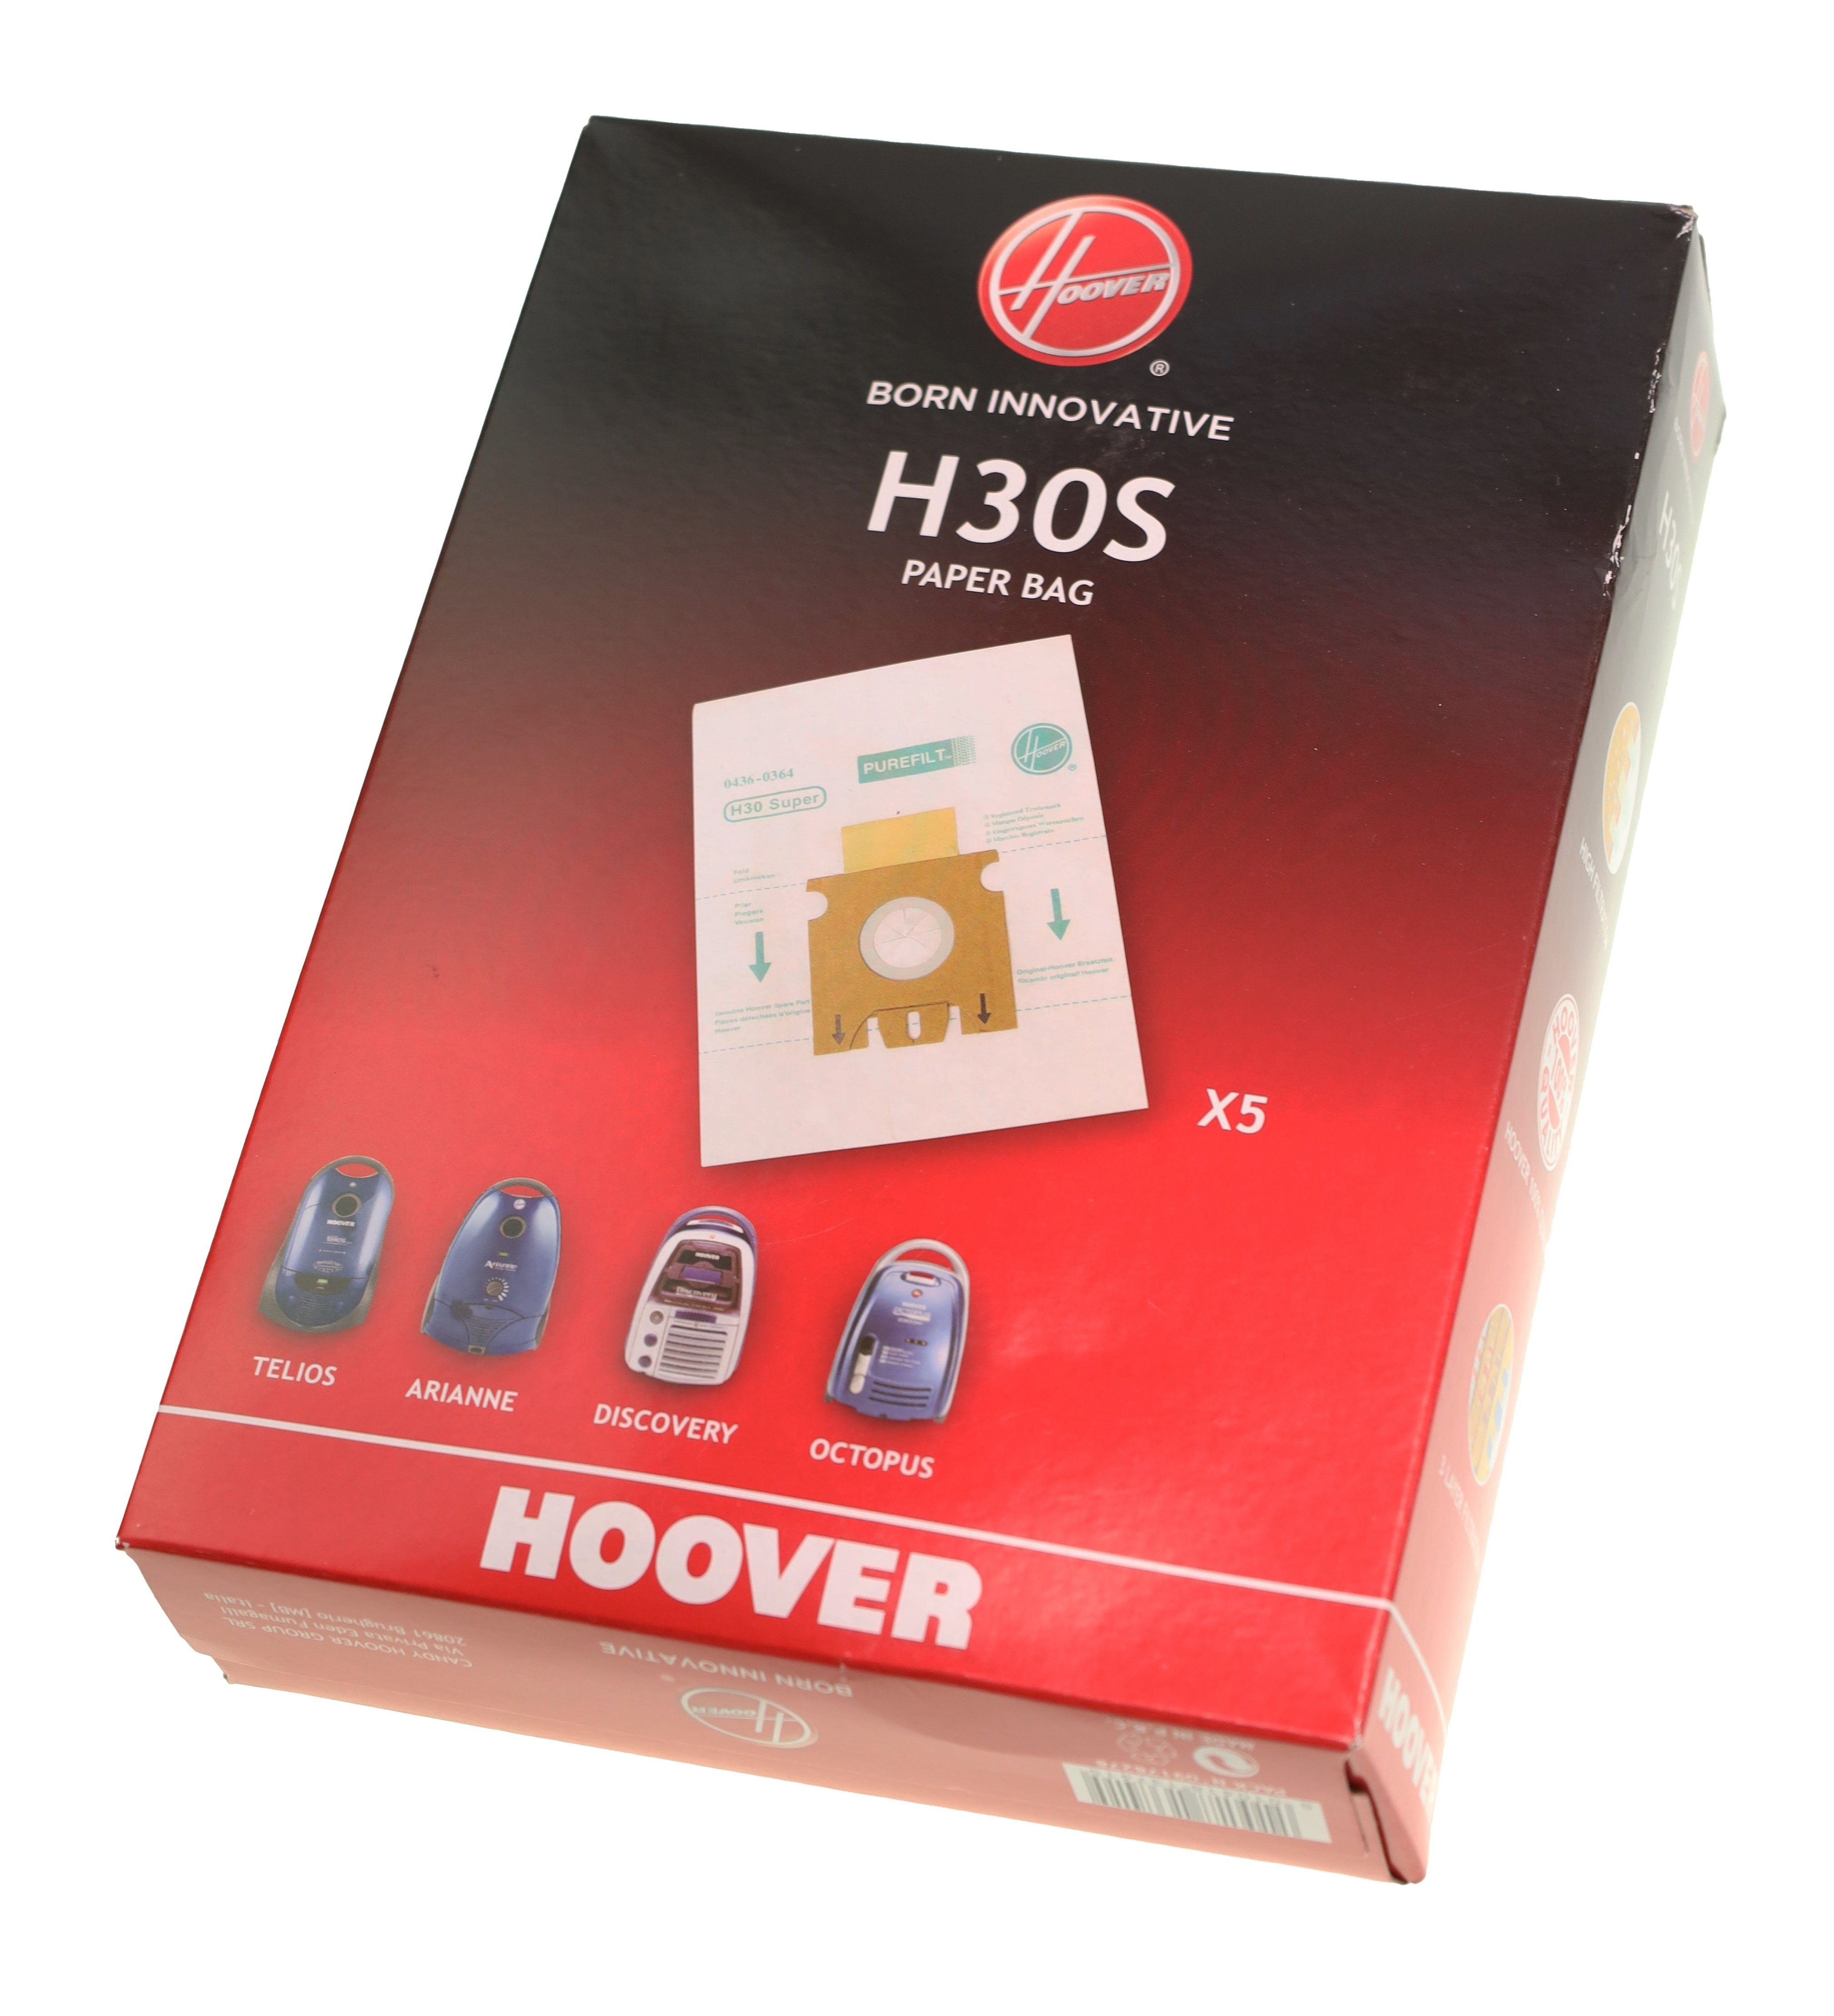 Hoover Hoover H30 Staubsaugerbeutel 09178278 Telios Arianne für Sensory Staubsaugerbeutel 5x